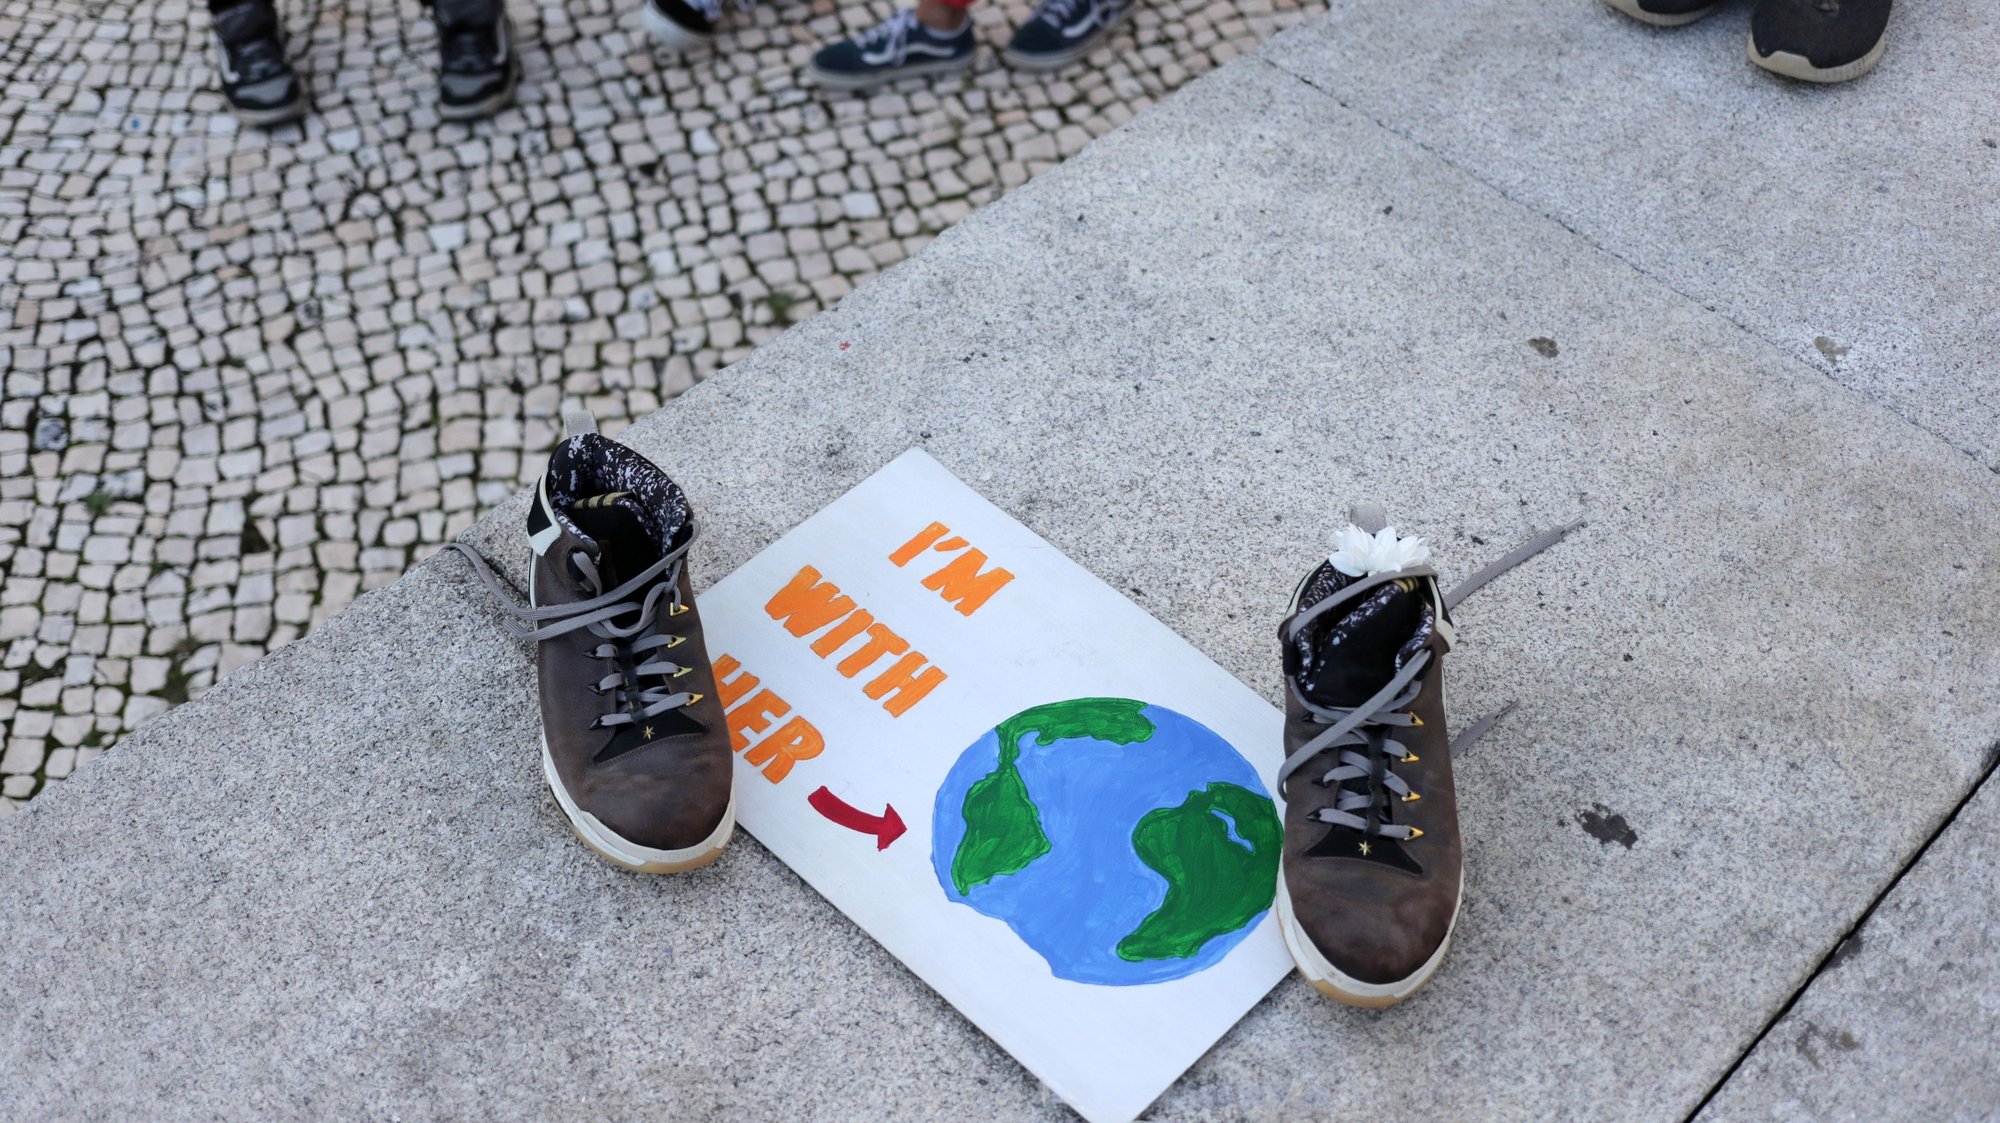 Manifestação Climática Global organizada pelo movimento Salvar o Clima, na sequência da iniciativa internacional liderada pela ativista sueca Greta Thunberg destinada a exigir medidas ambientais em defesa do planeta, no Porto, 25 de setembro de 2020. ESTELA SILVA/LUSA